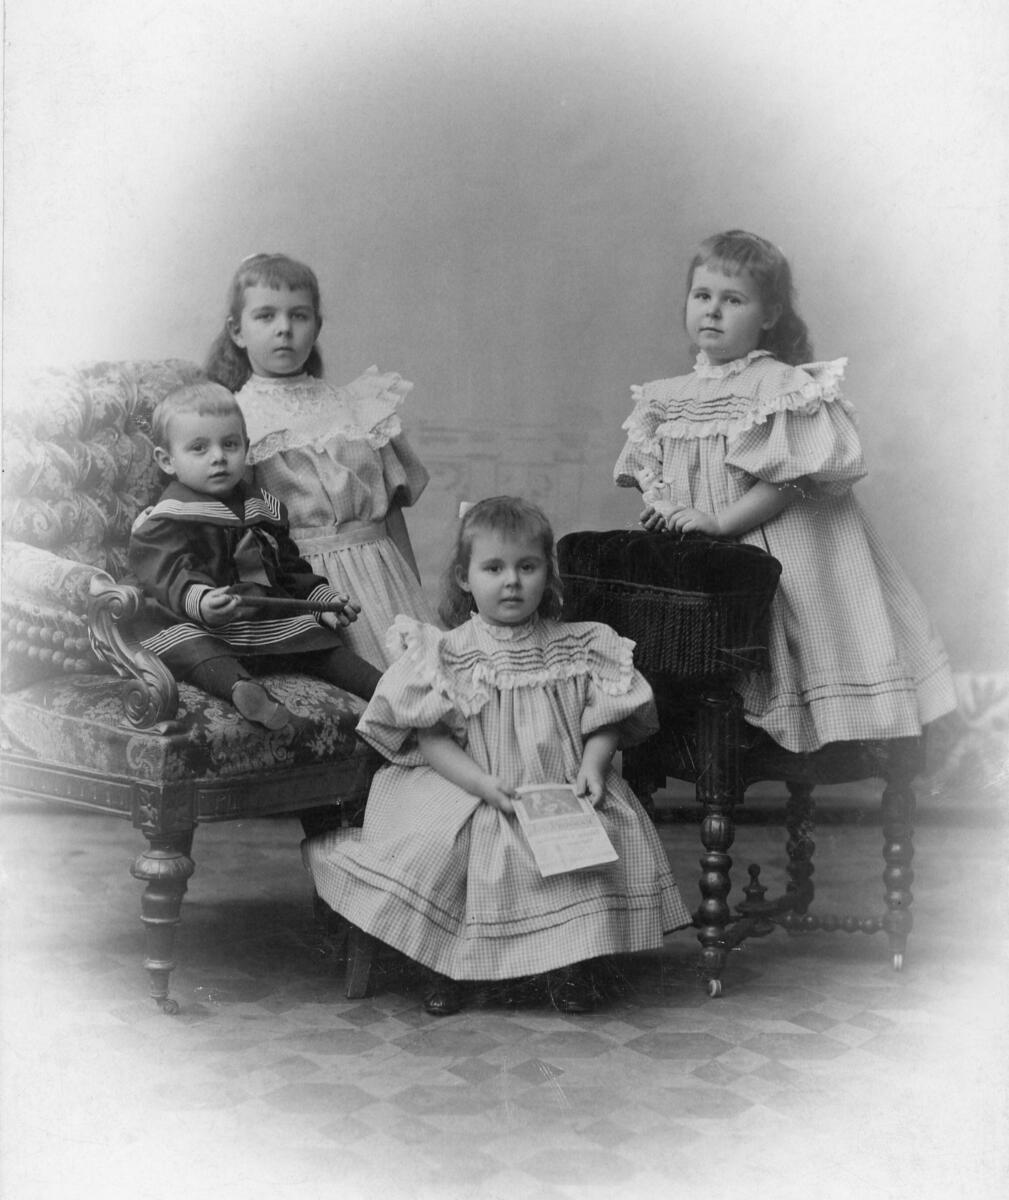 Fotografi från August Bondesons vänkrets. Anteckning på fotots baksida: "Till vår egen Onkel [oläsligt ord] från hans små. Ester, Greta, Ingrid och Ralph."